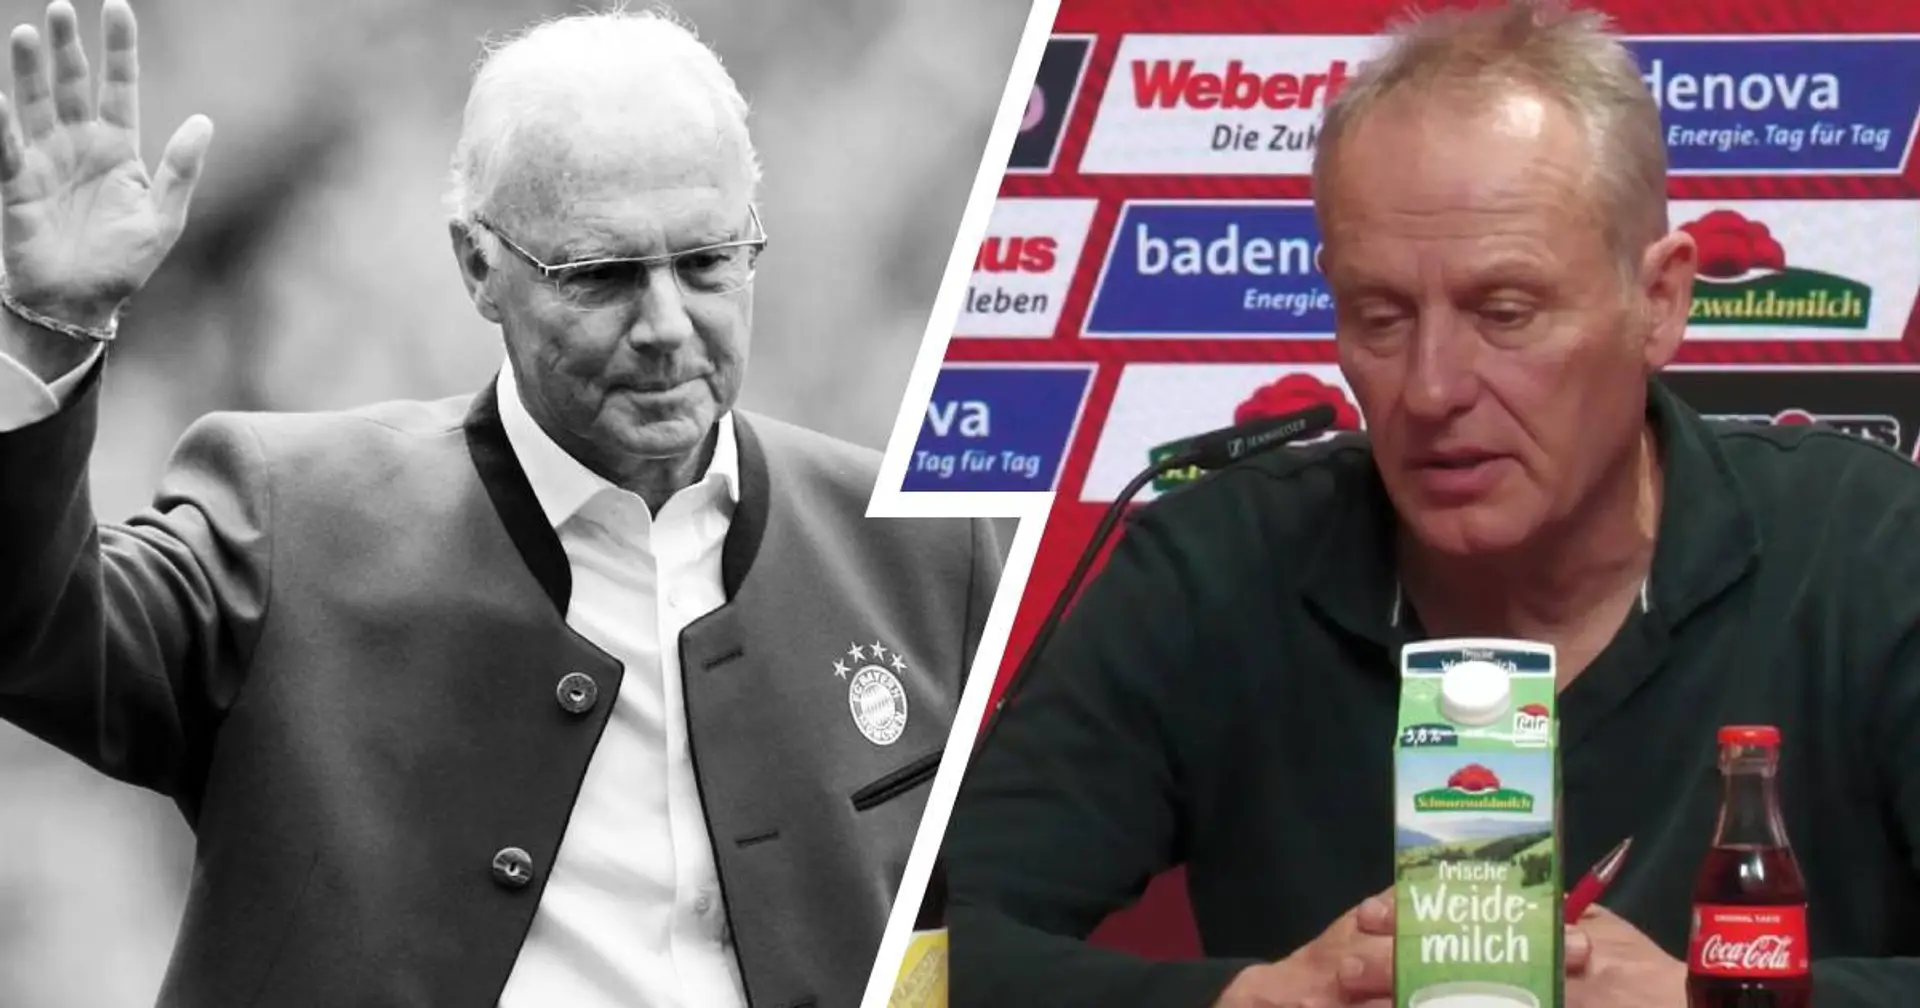 "Das sagt alles über ihn": Freiburg-Coach Streich erzählt bemerkenswerte Anekdote über Beckenbauer